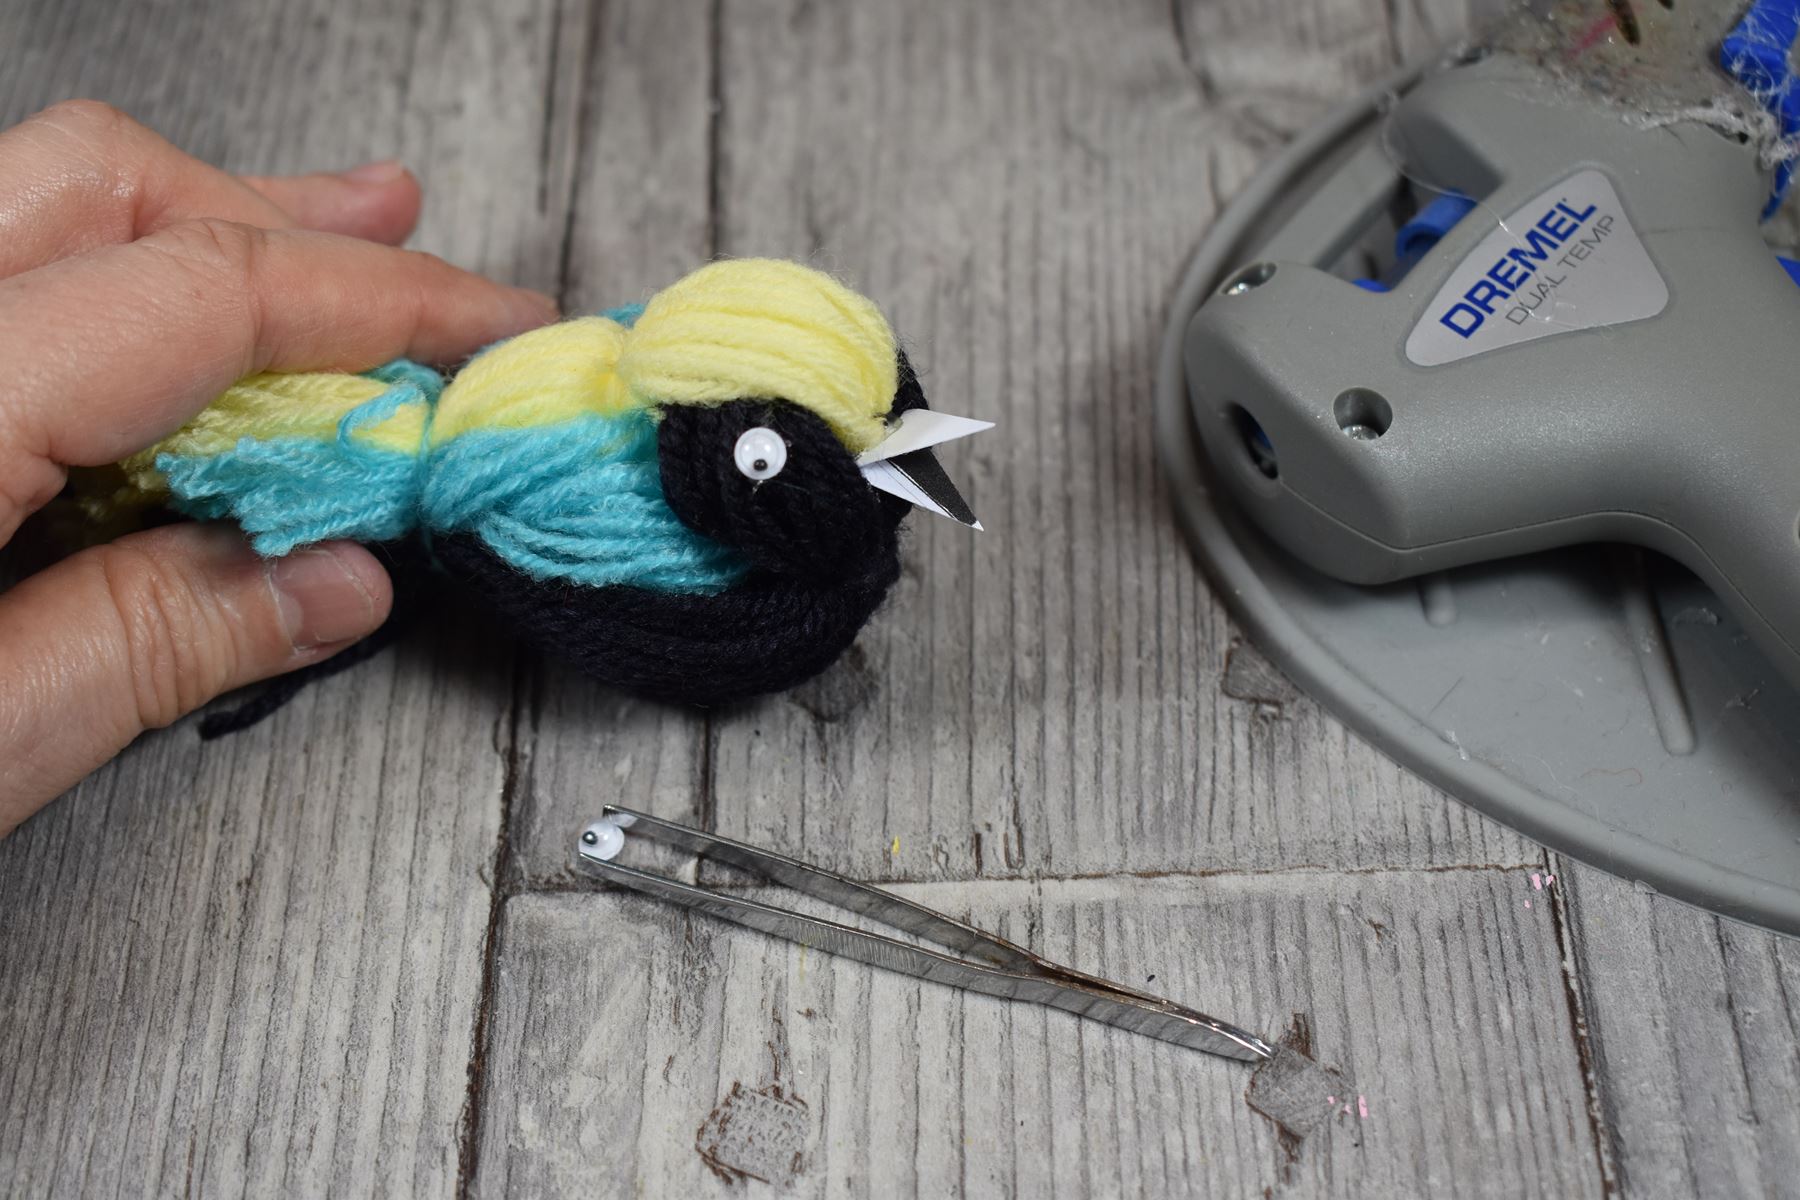 oiseau-diy-laine-bricolage-sans-aiguille-sans-crochet-facile-decoration-pour-mobile-deco-atelier-avec-les-enfants-loisirs-creatifs-ludique